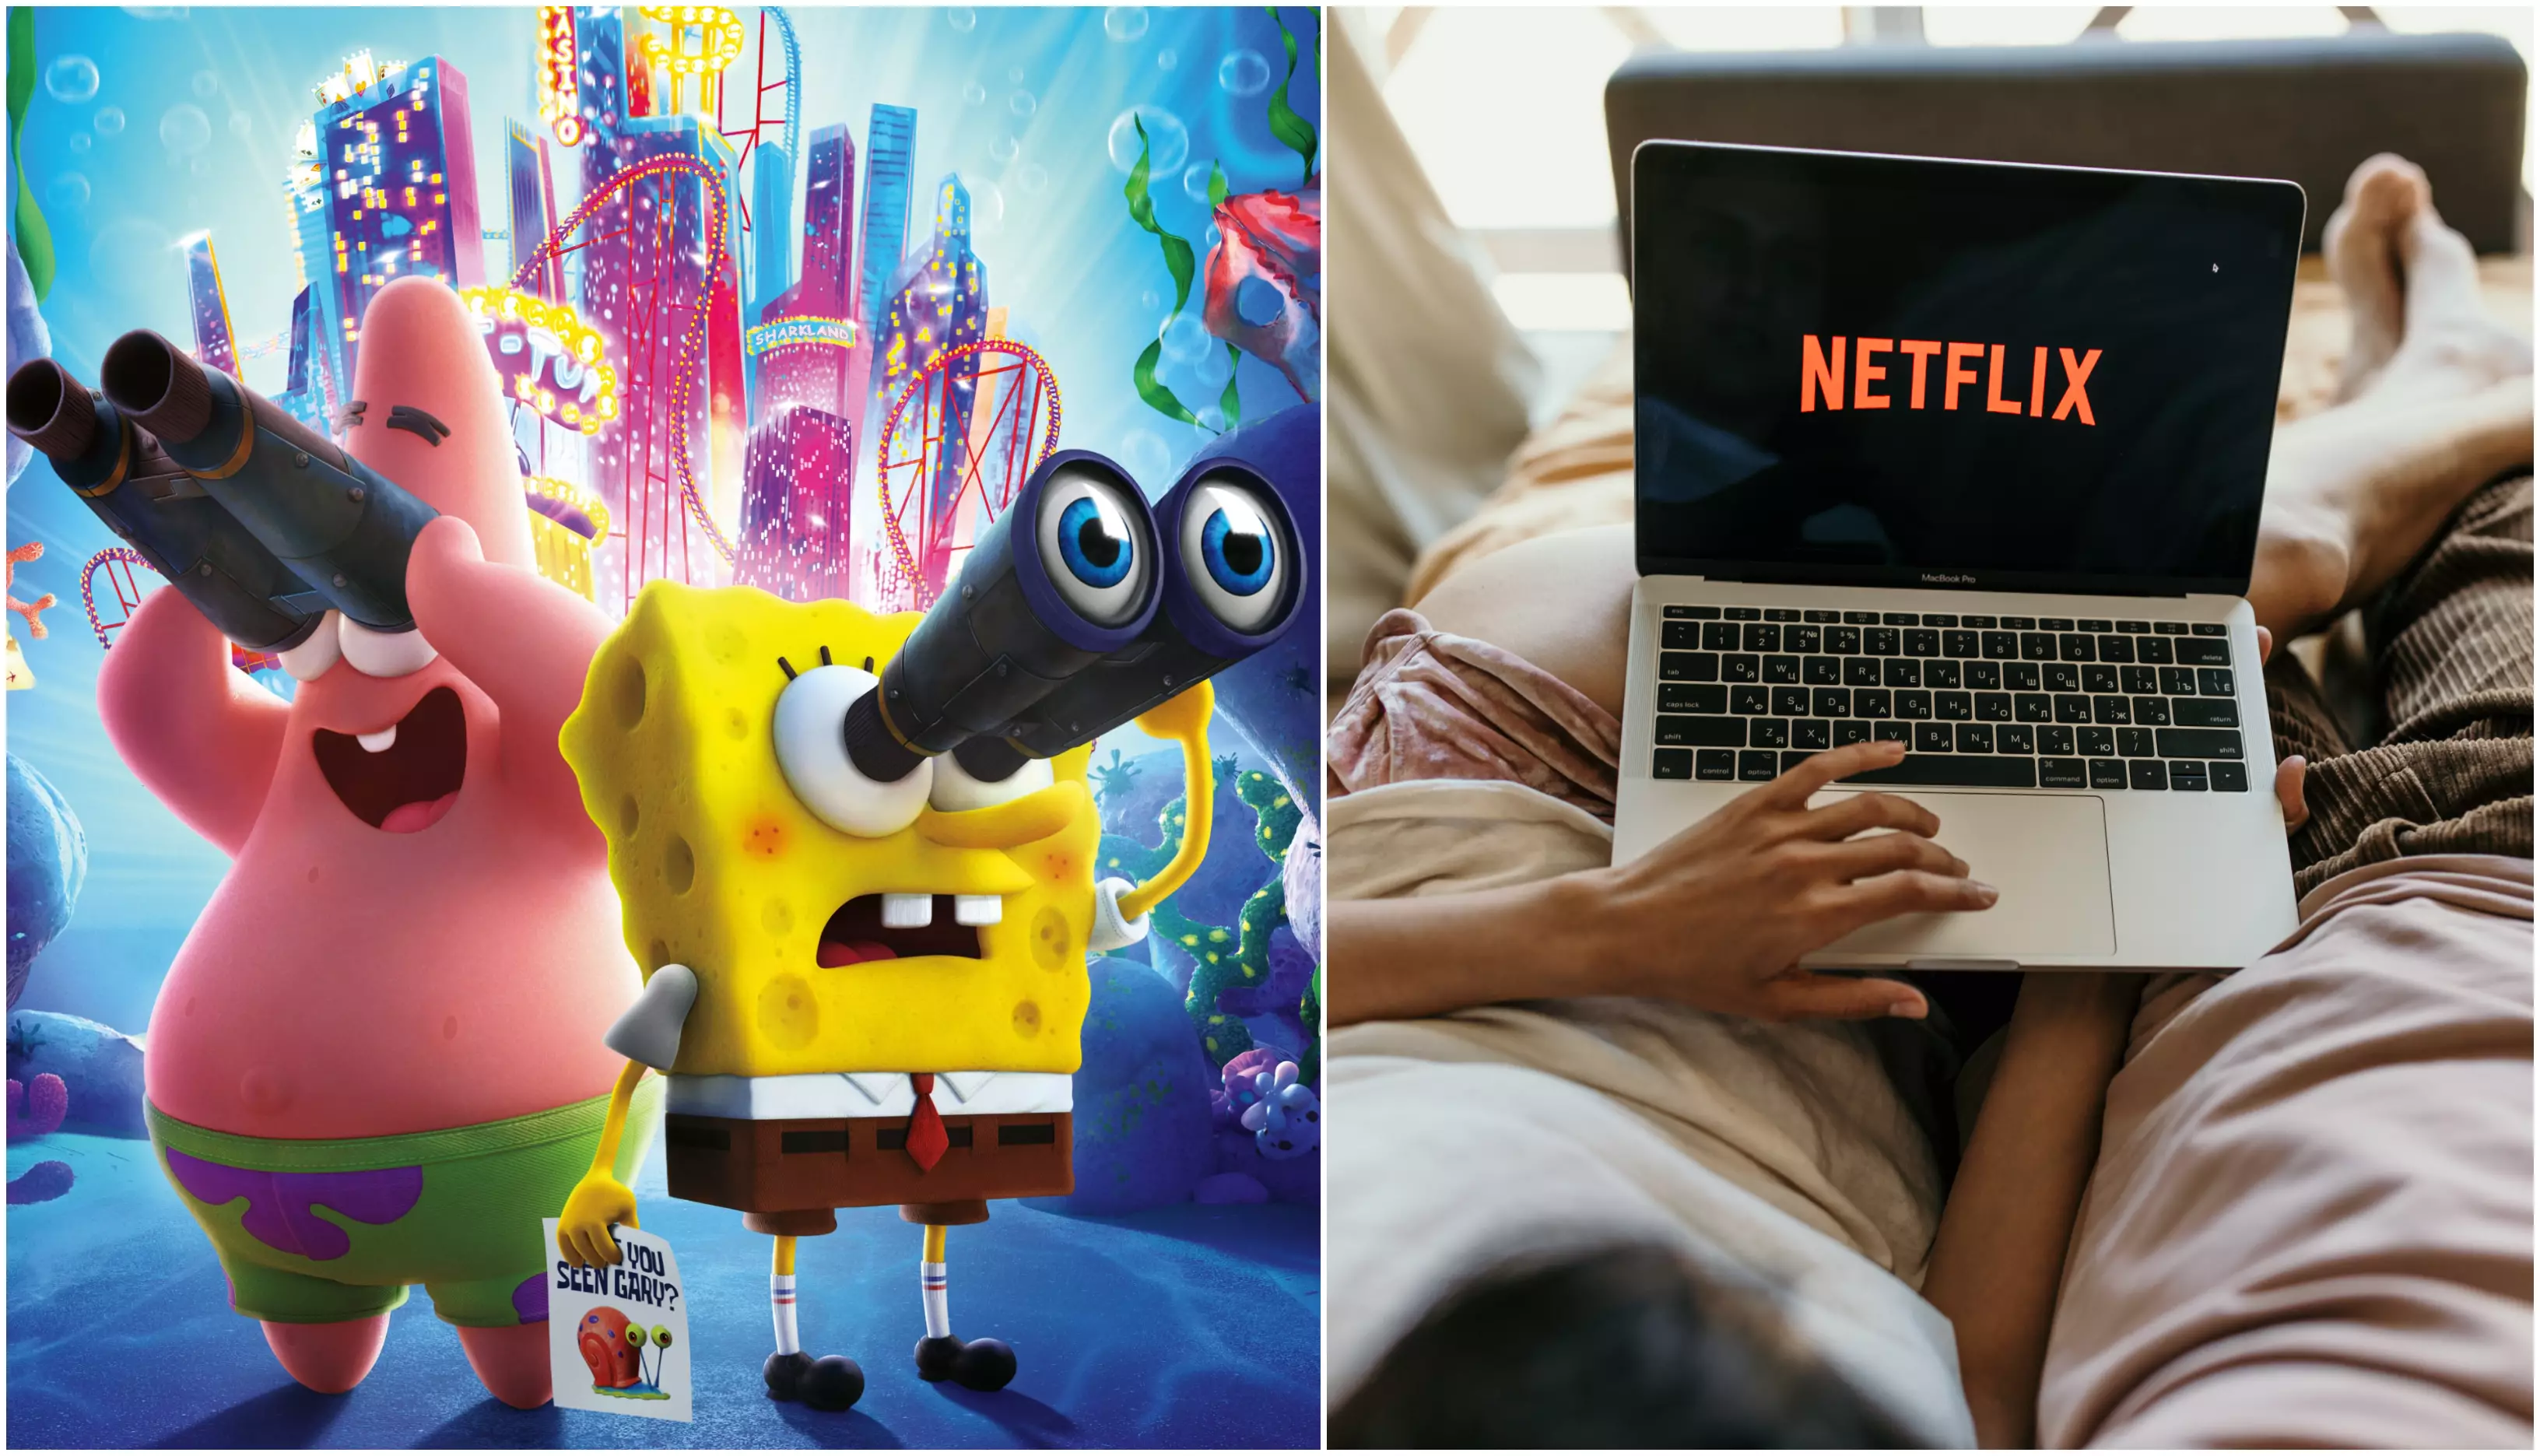 Мультфильм "Губка Боб в бегах" появился в украинском дубляже на Netflix